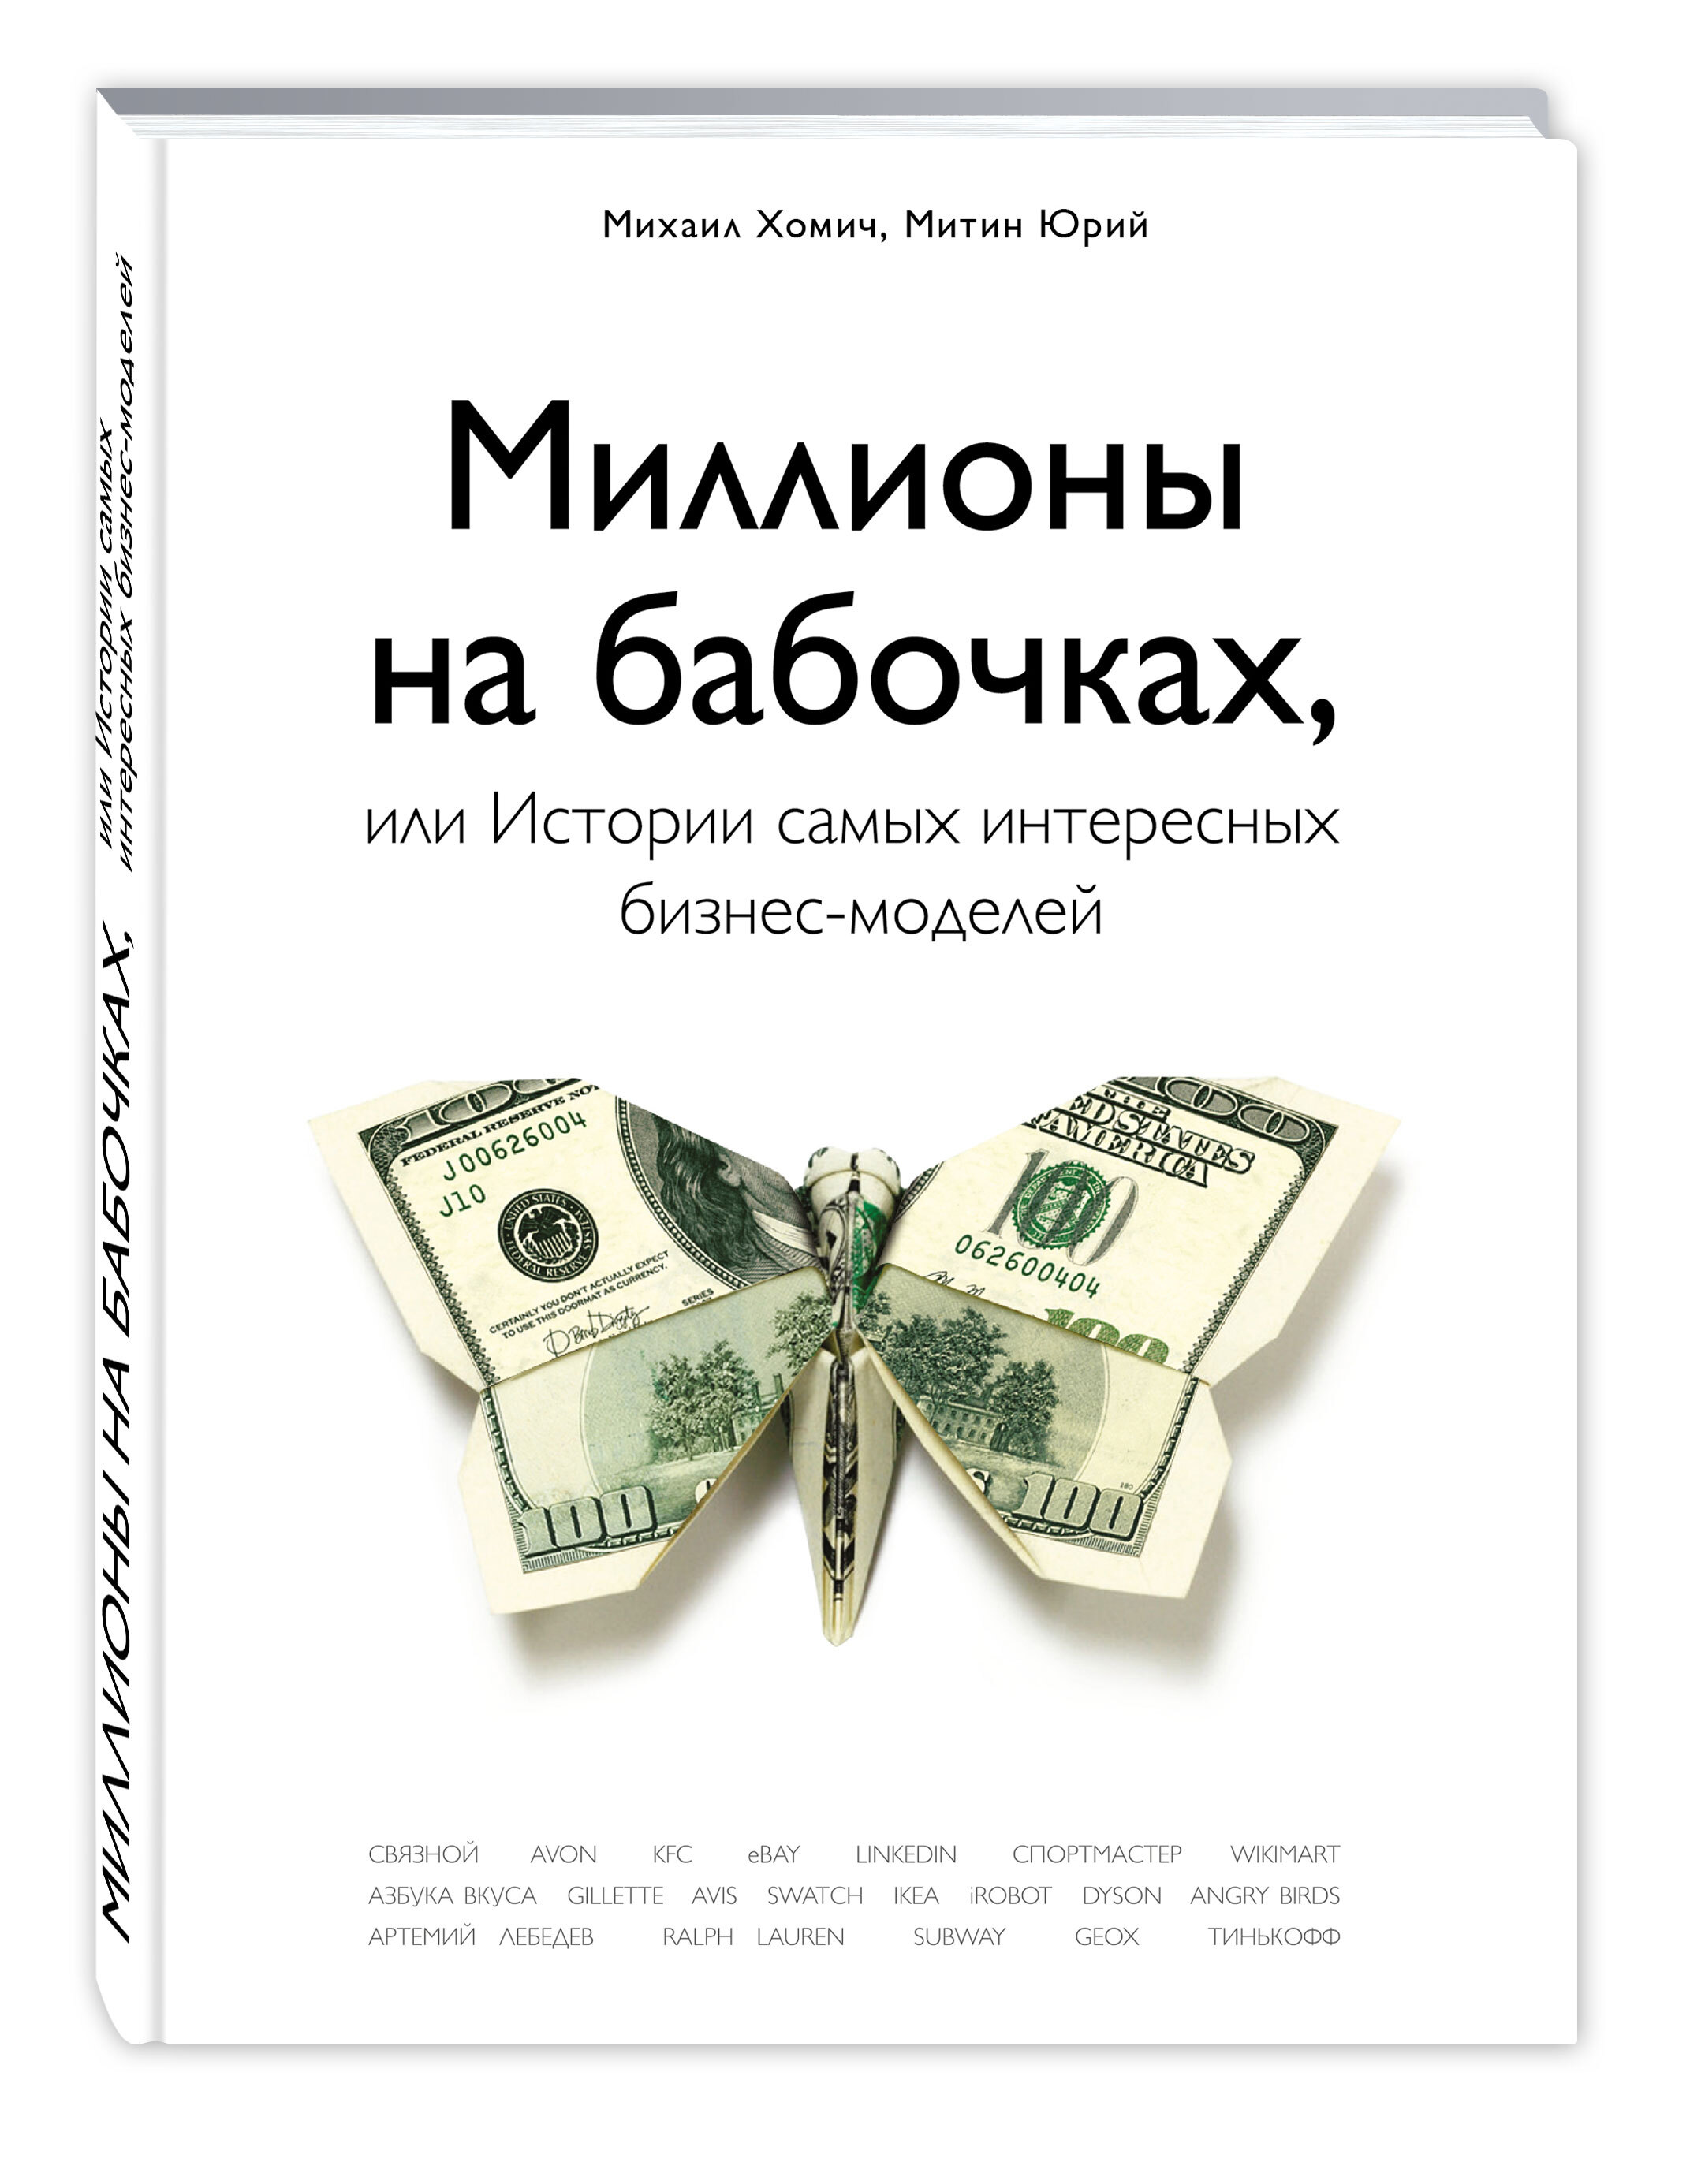 Обзор книги «Миллионы на бабочках или истории самых интересных бизнес-моделей», автор Хомич Михаил, Митин Юрий.